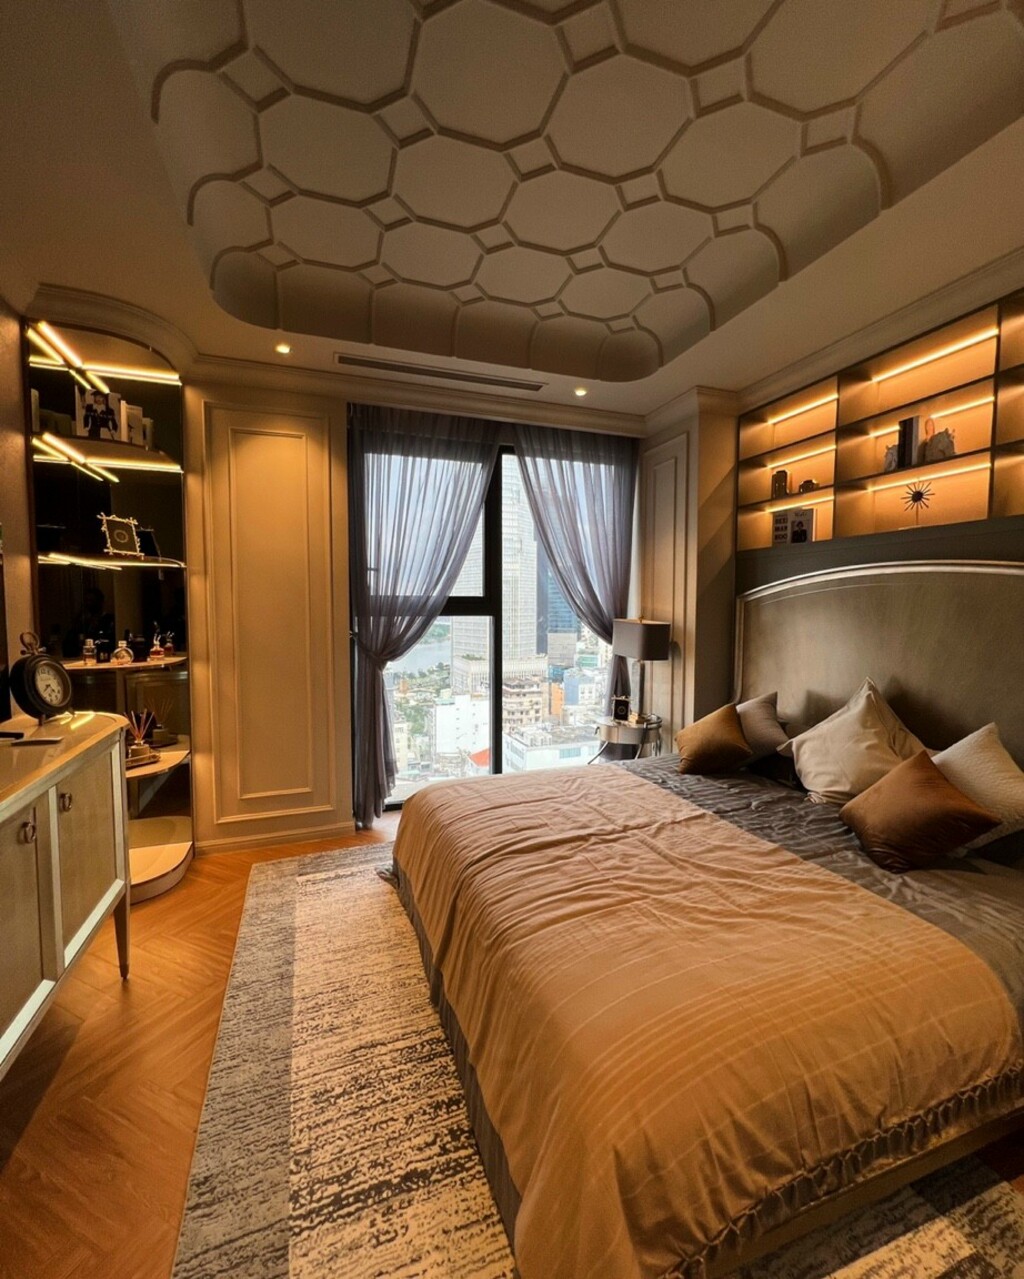 Phòng ngủ được thiết kế với mục đích ngủ và nghỉ